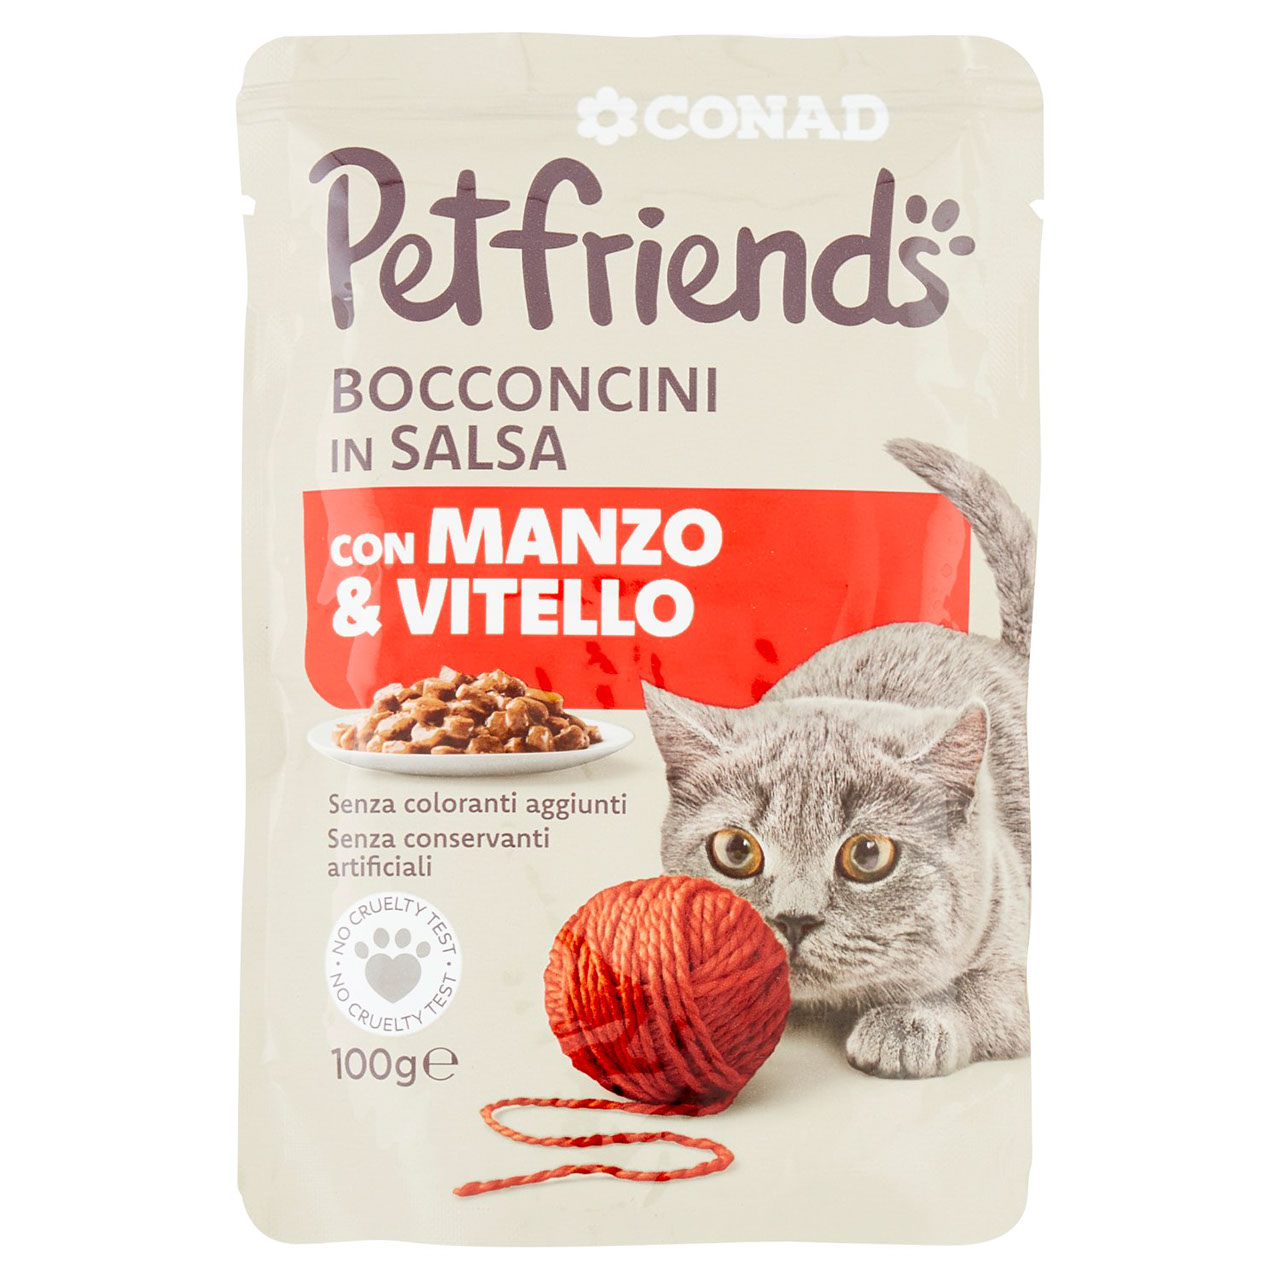 Bocconcini con Manzo & Vitello Petfriends Conad